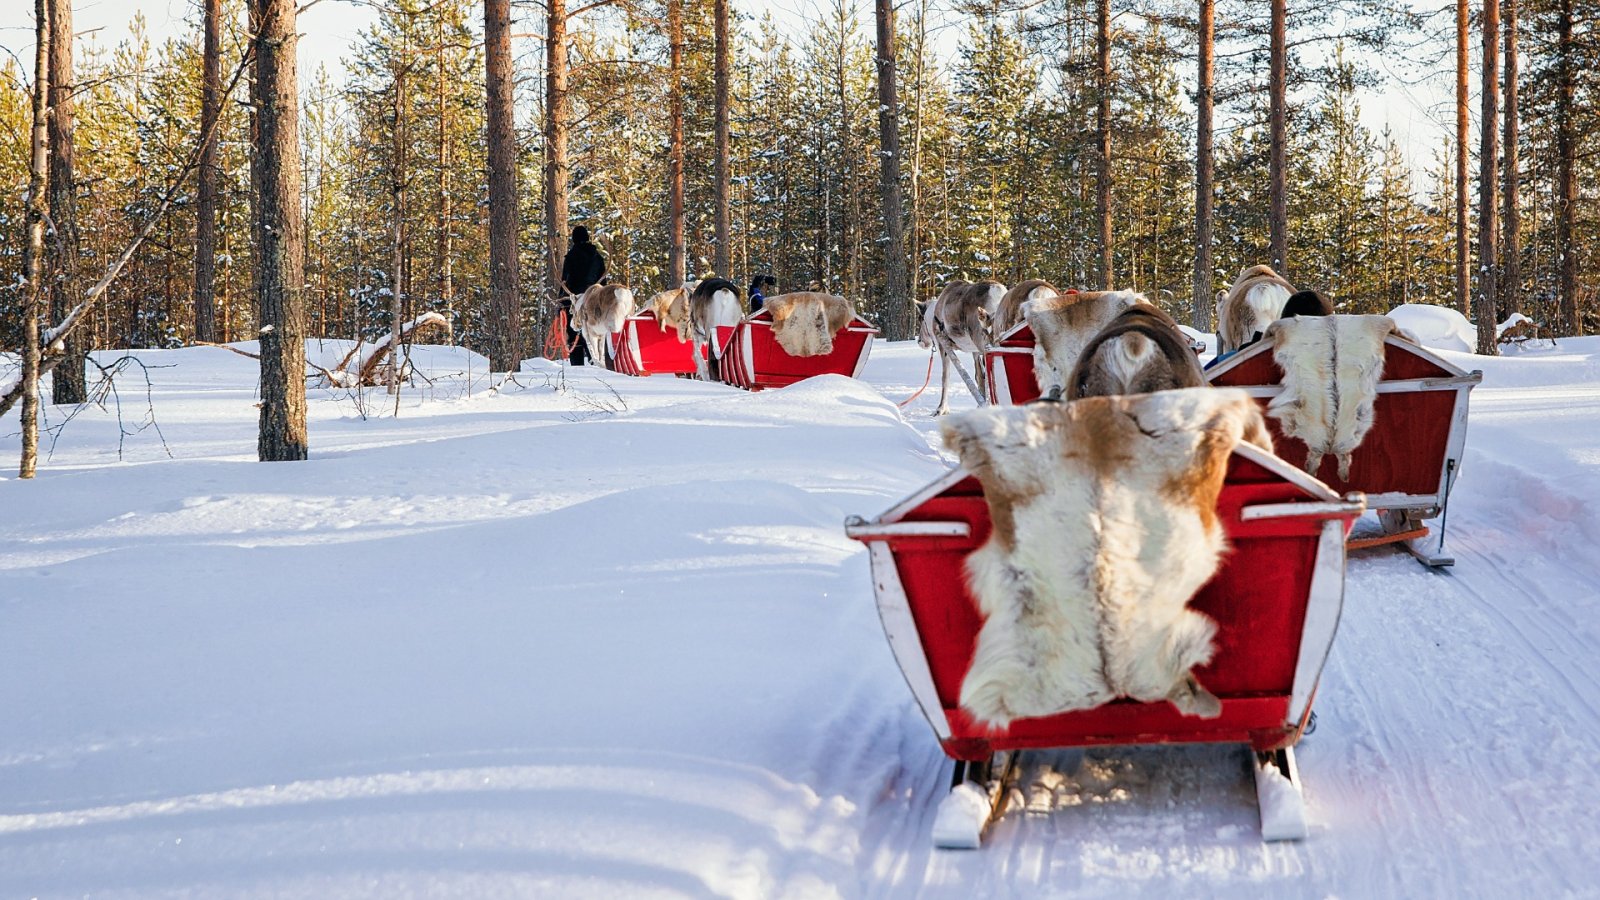 Faites du traîneau pour célébrer Noël : un guide familial pour planifier un voyage magique en Laponie